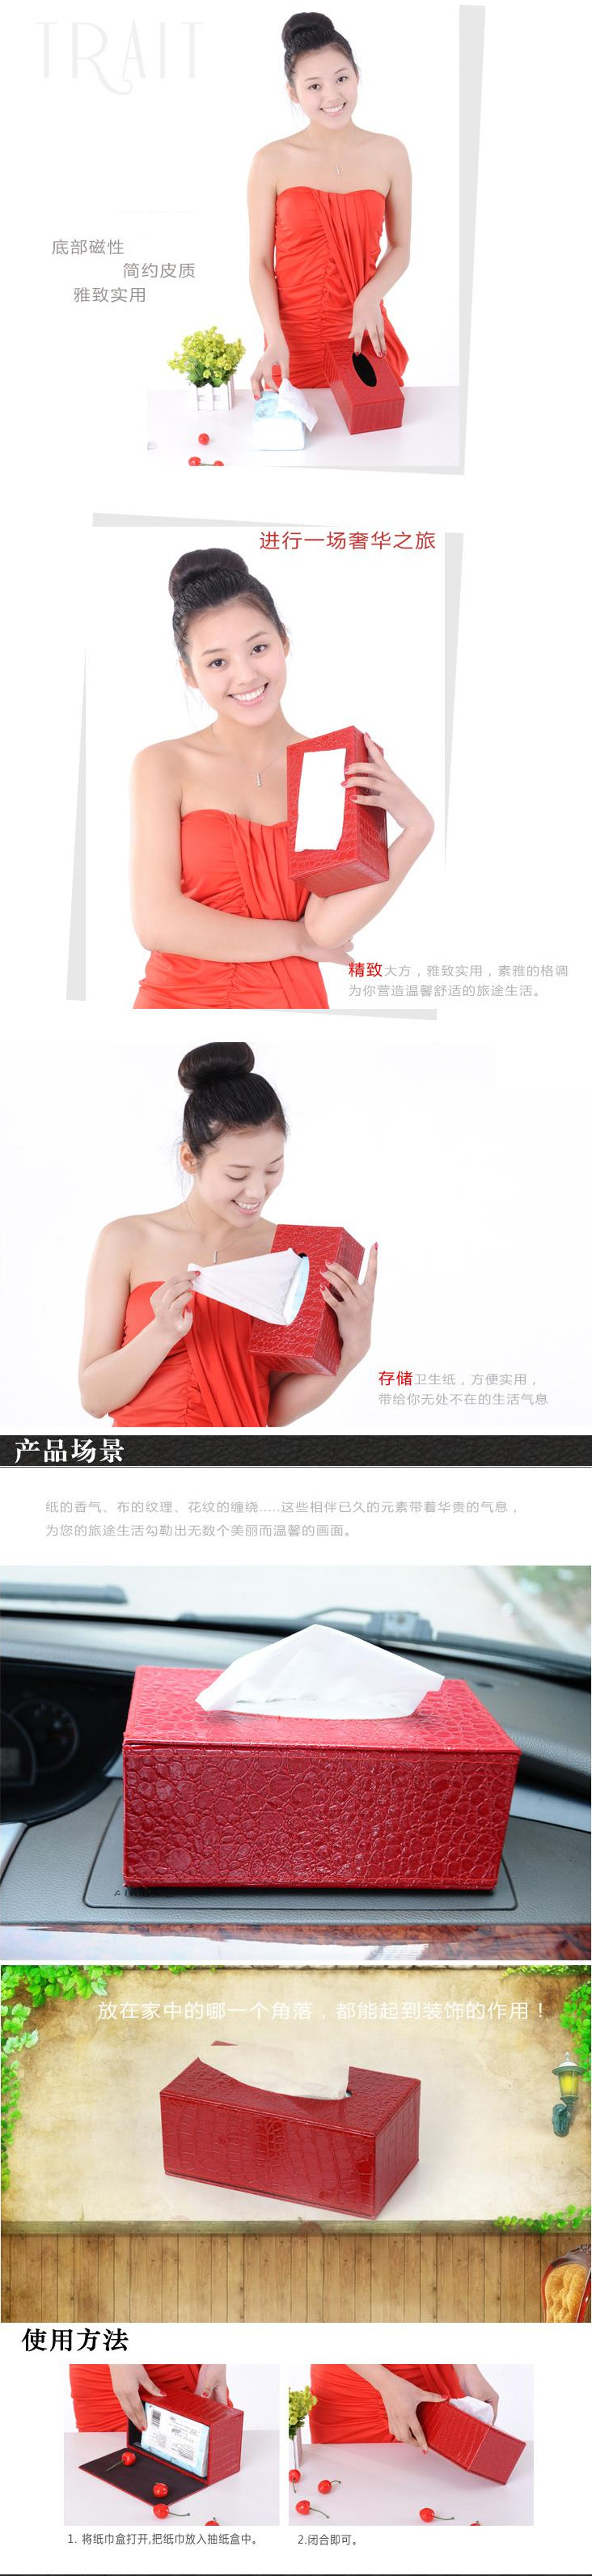 开馨宝奢华长方形纸巾盒-红色鳄鱼纹（K8504-2）